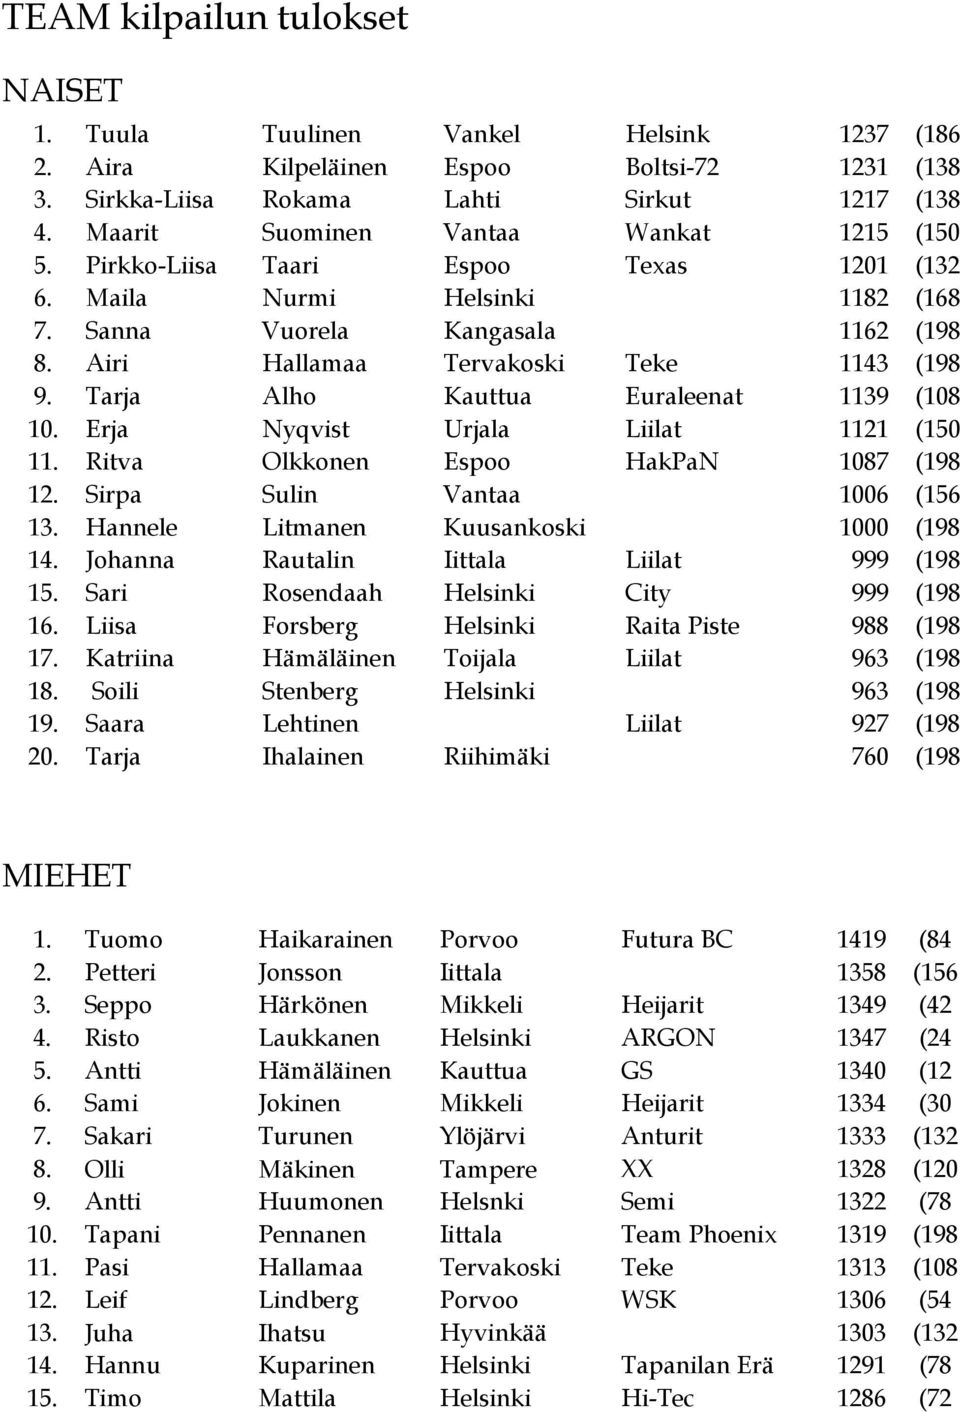 Tarja Alho Kauttua Euraleenat 1139 (108 10. Erja Nyqvist Urjala Liilat 1121 (150 11. Ritva Olkkonen Espoo HakPaN 1087 (198 12. Sirpa Sulin Vantaa 1006 (156 13.